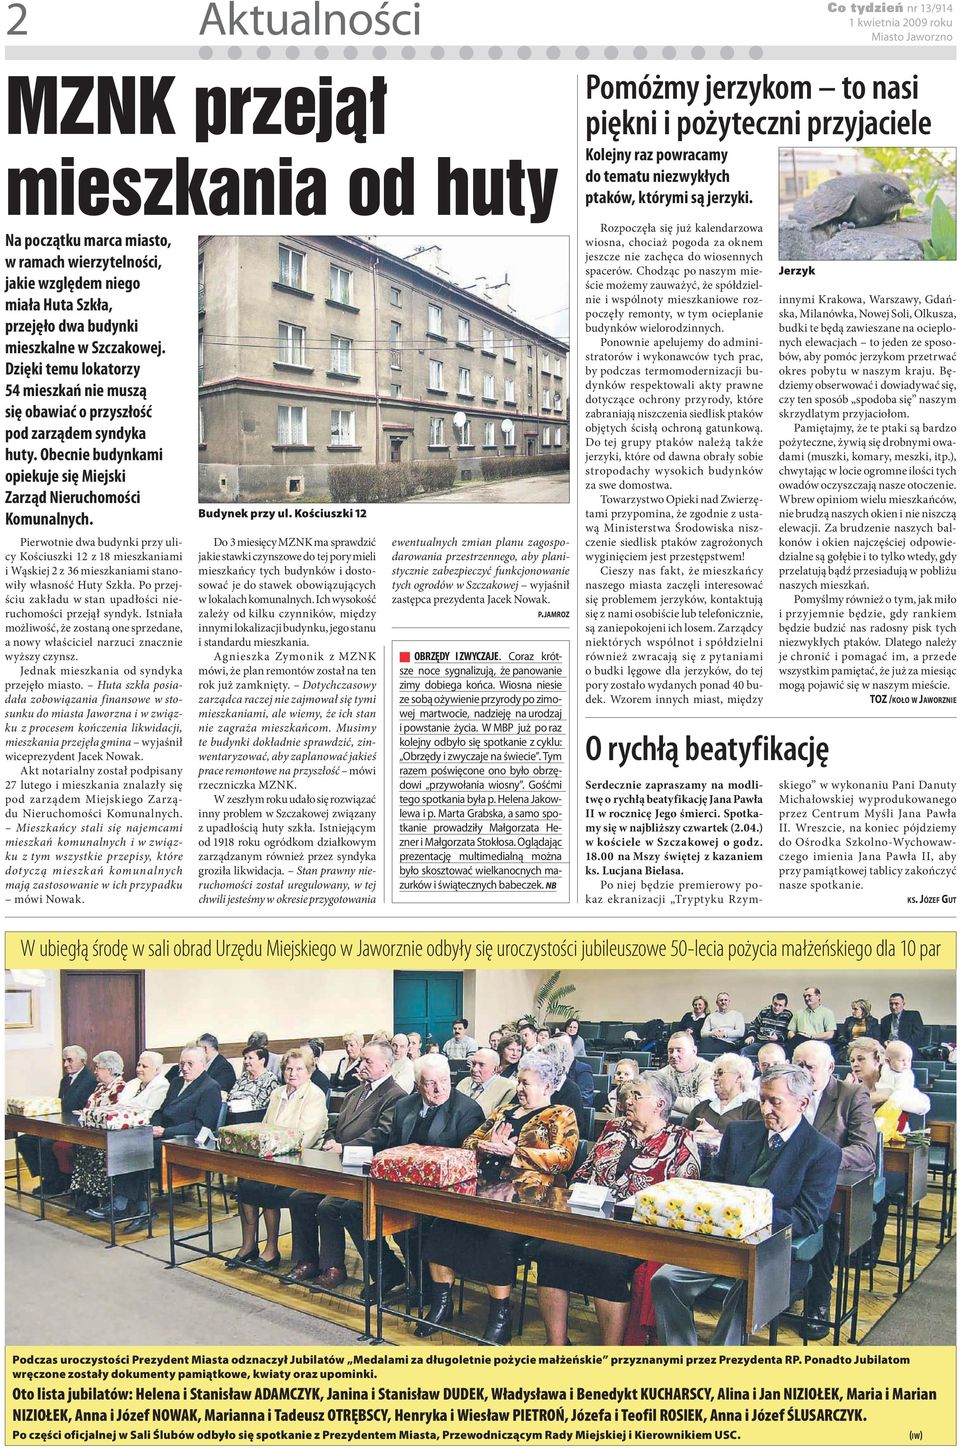 Pierwotnie dwa budynki przy ulicy Kościuszki 12 z 18 mieszkaniami i Wąskiej 2 z 36 mieszkaniami stanowiły własność Huty Szkła. Po przejściu zakładu w stan upadłości nieruchomości przejął syndyk.